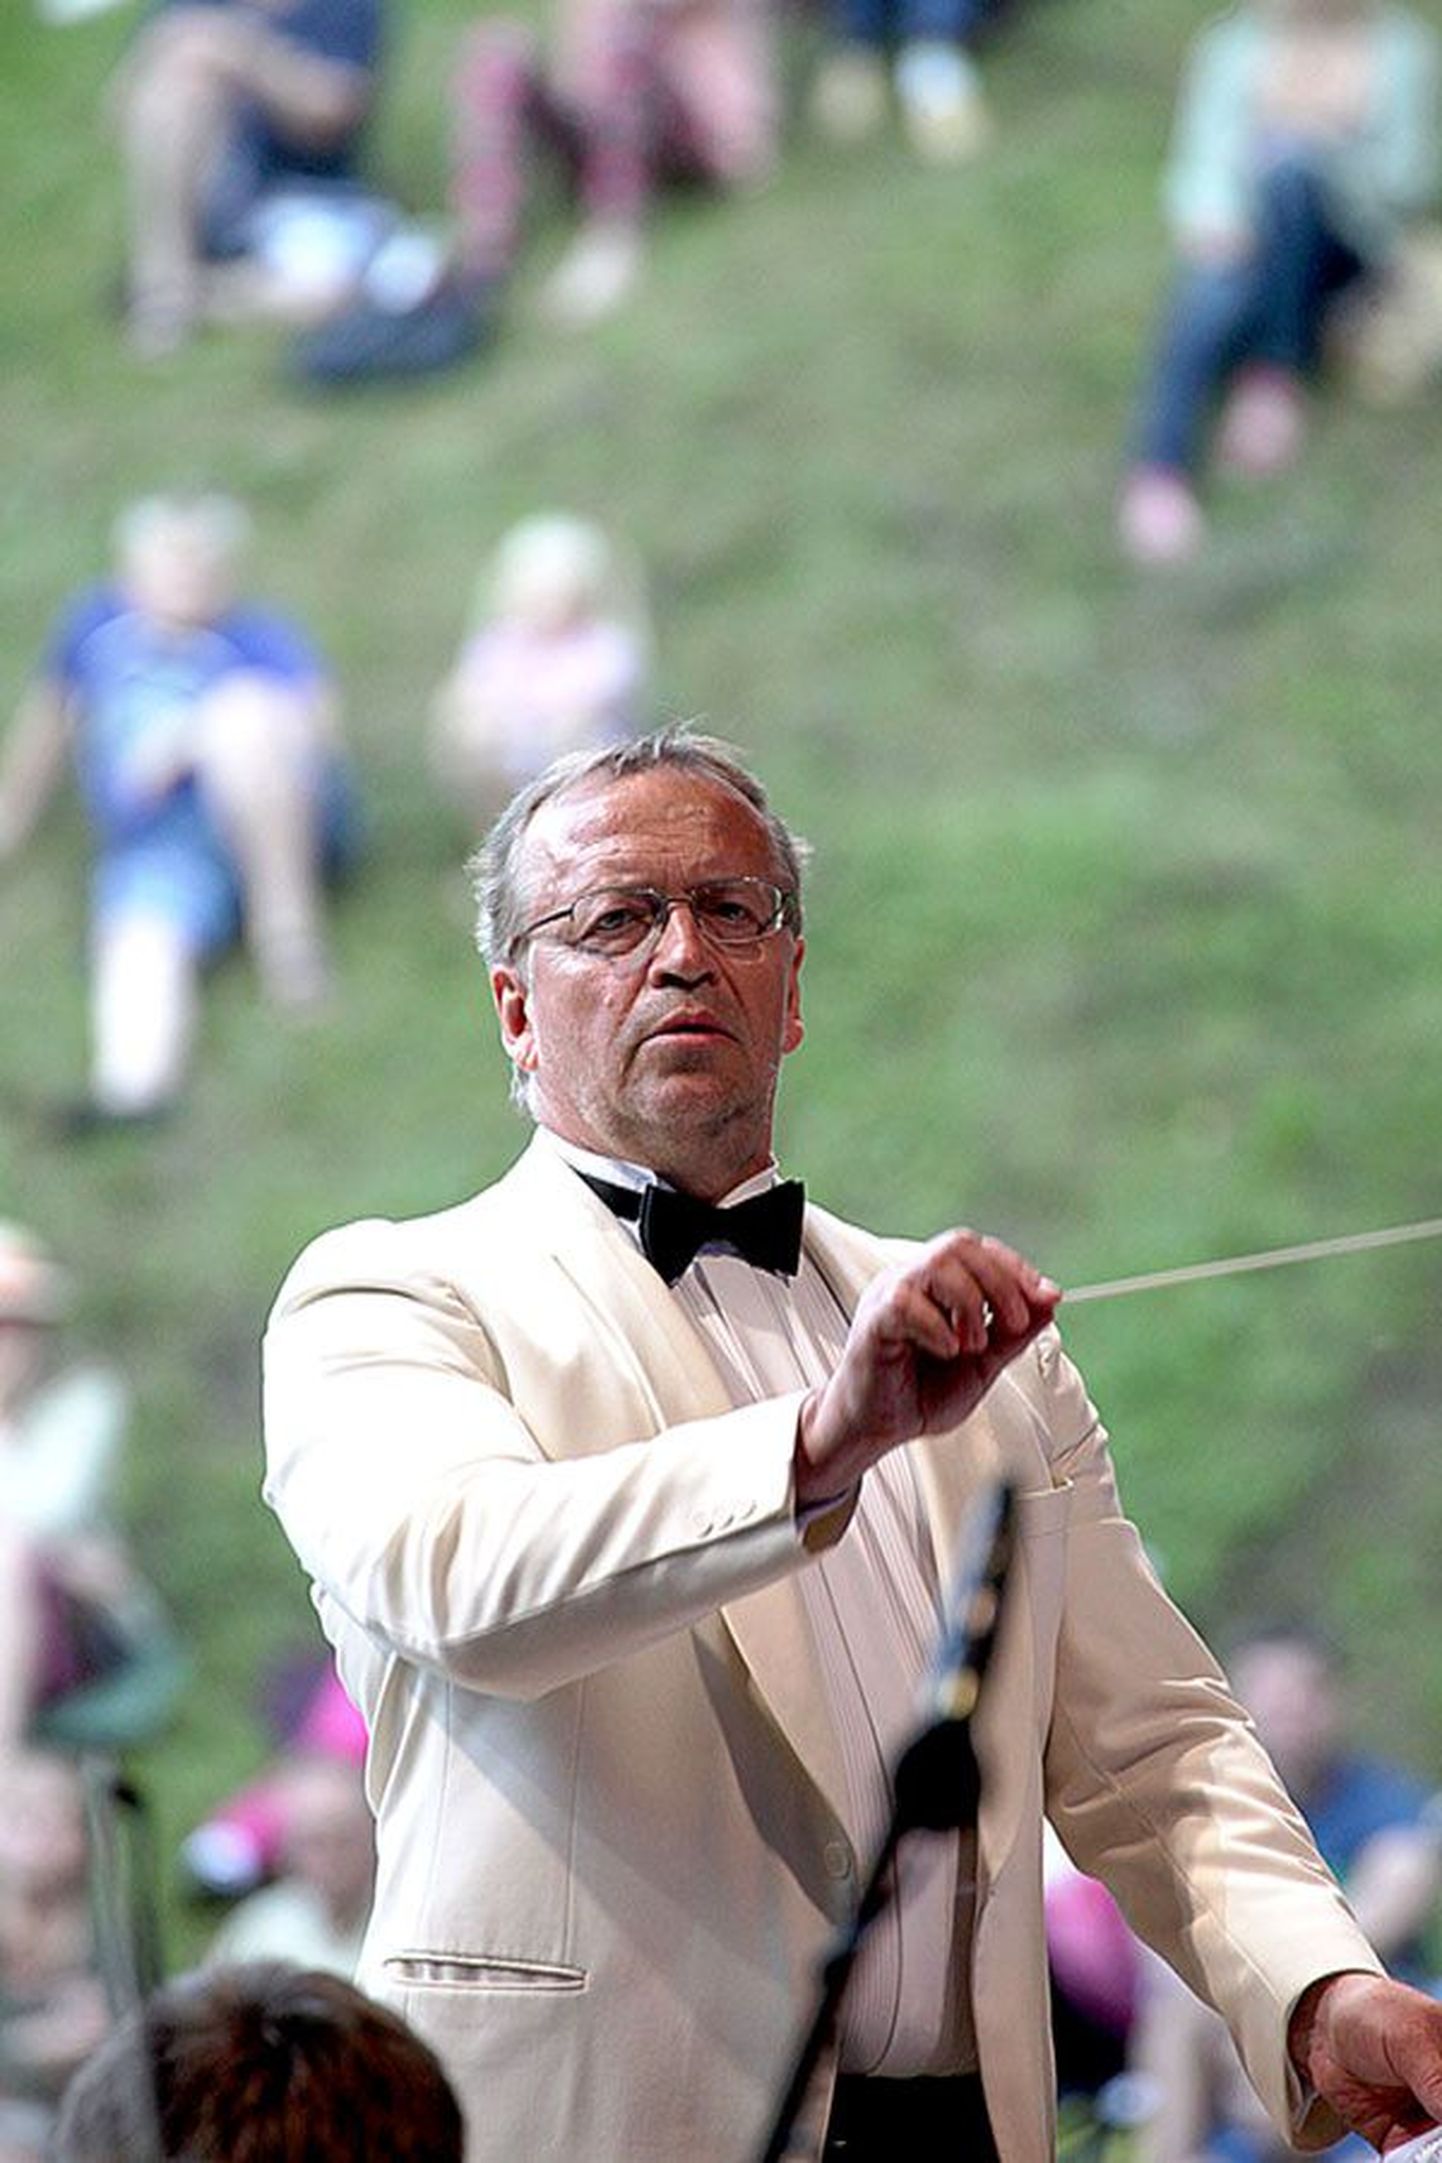 Paul Mägi (59) taktikeppi jälgisid Toomeorus orkestrandid ja solistid ning kuulajad istmeridades ja nõlvadel.